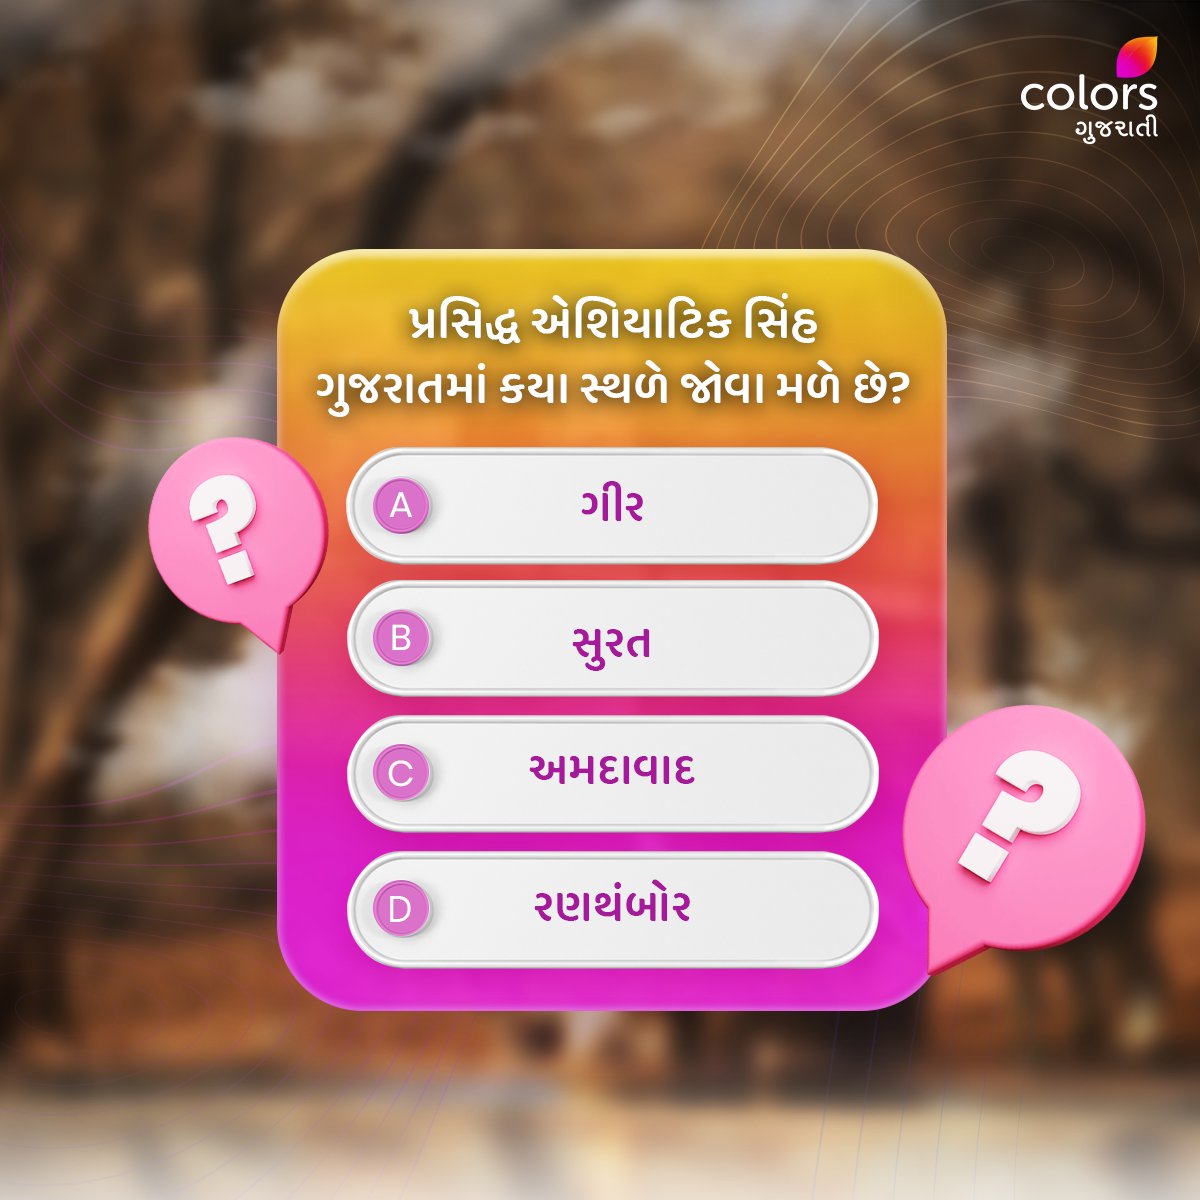 ગુજરાતના કયા સ્થળે એશિયાટિક સિંહ જોવા મળે છે🤔? Comment માં જણાવો.👇 

#Colorsgujarati #Gujarat #Quiz #Facts #generalquiz